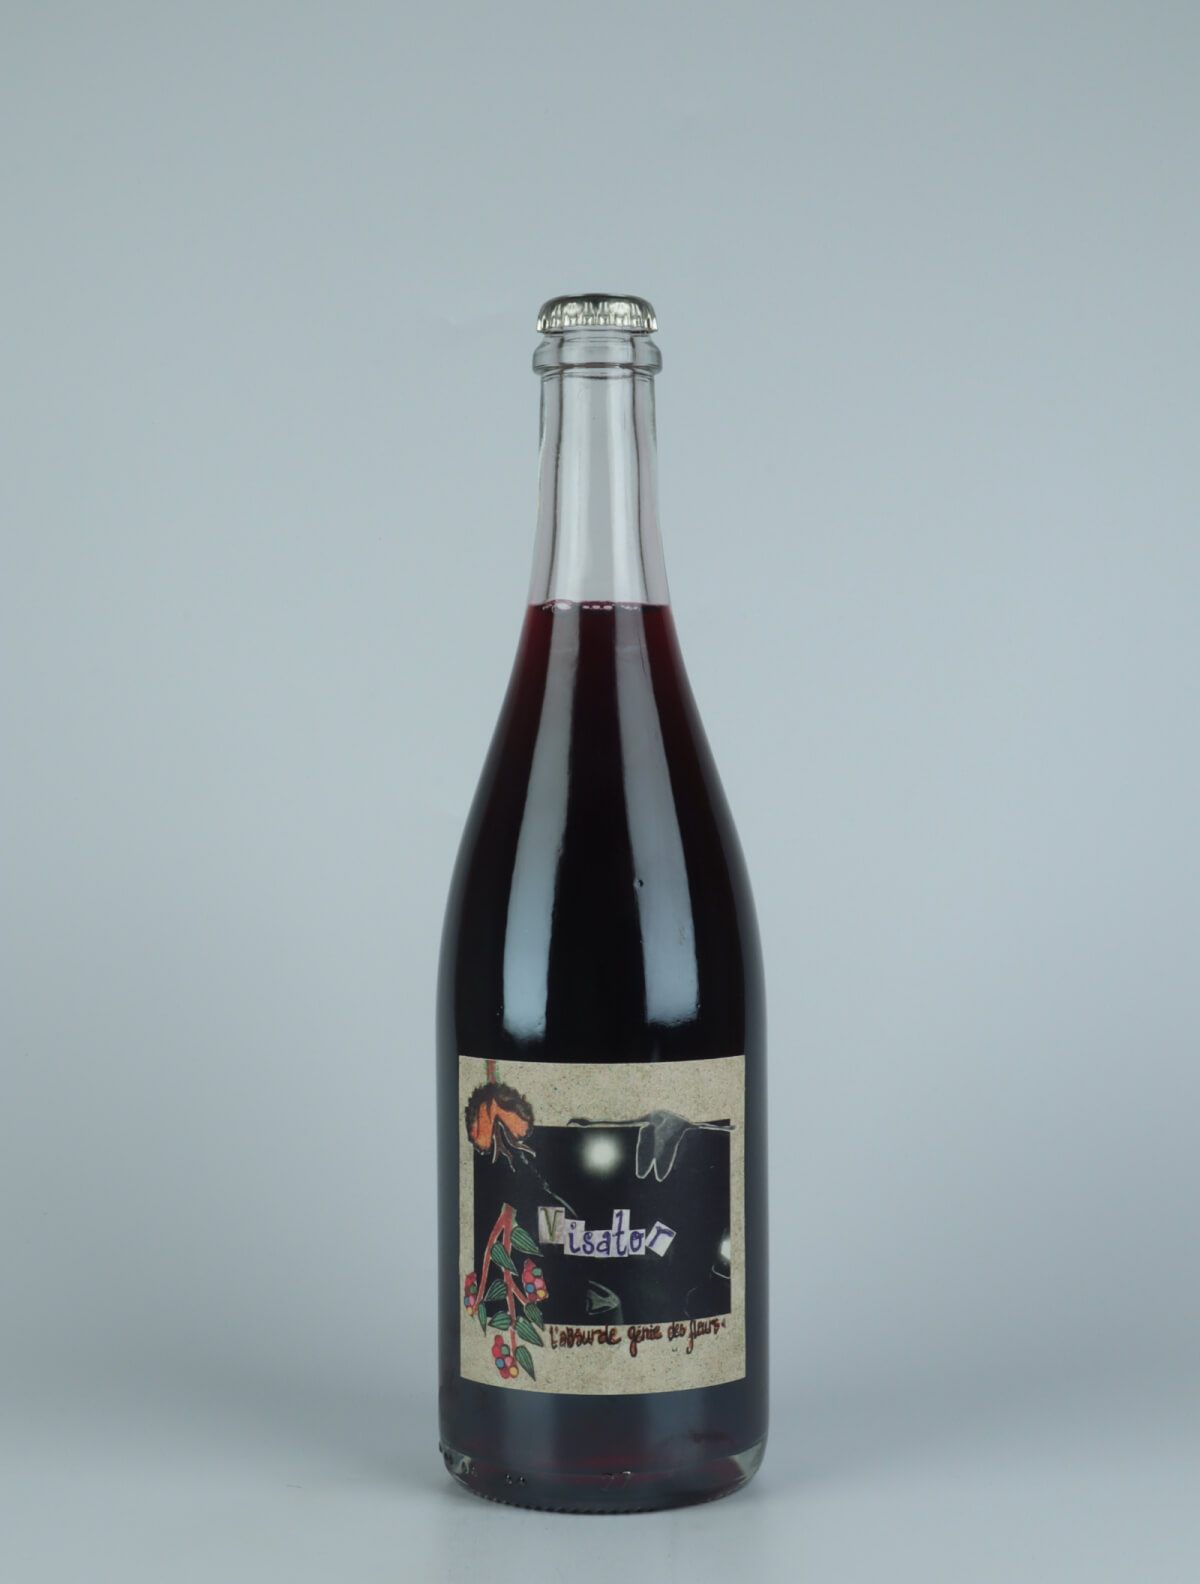 En flaske 2021 Visator Rødvin fra Absurde Génie des Fleurs, Languedoc i Frankrig